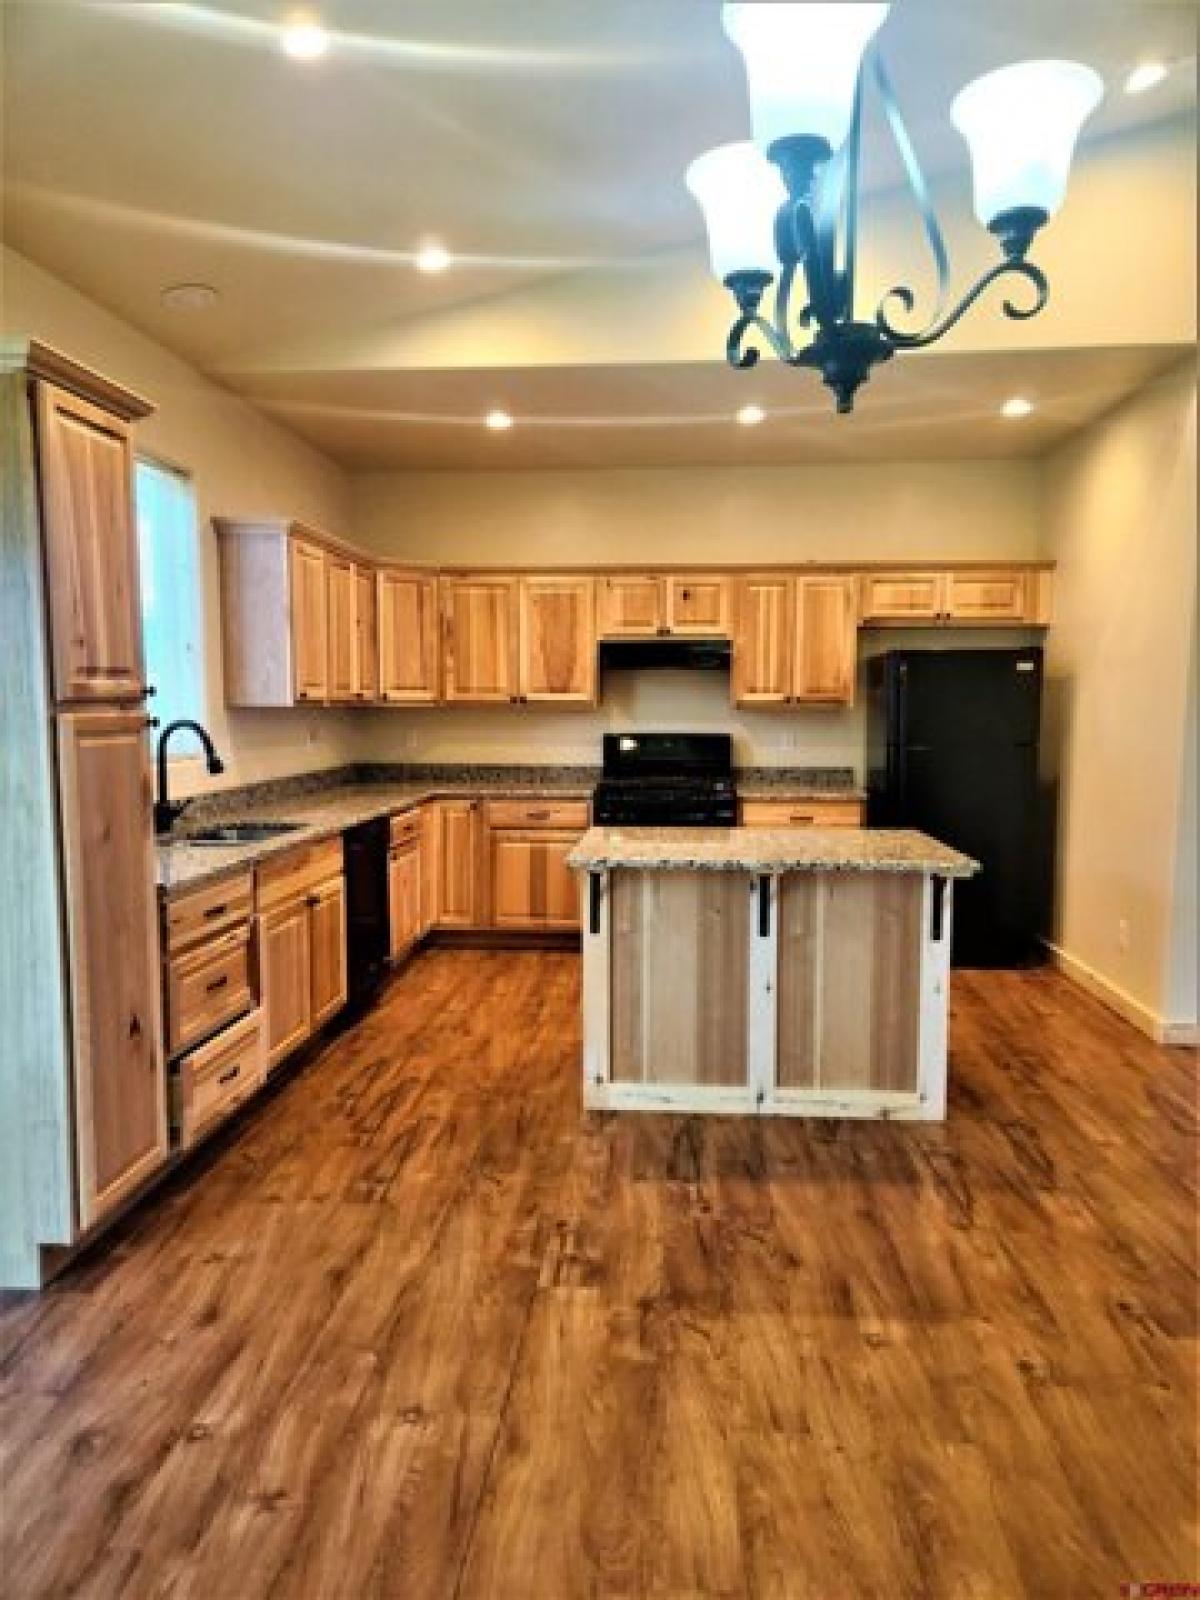 Picture of Home For Sale in Ignacio, Colorado, United States